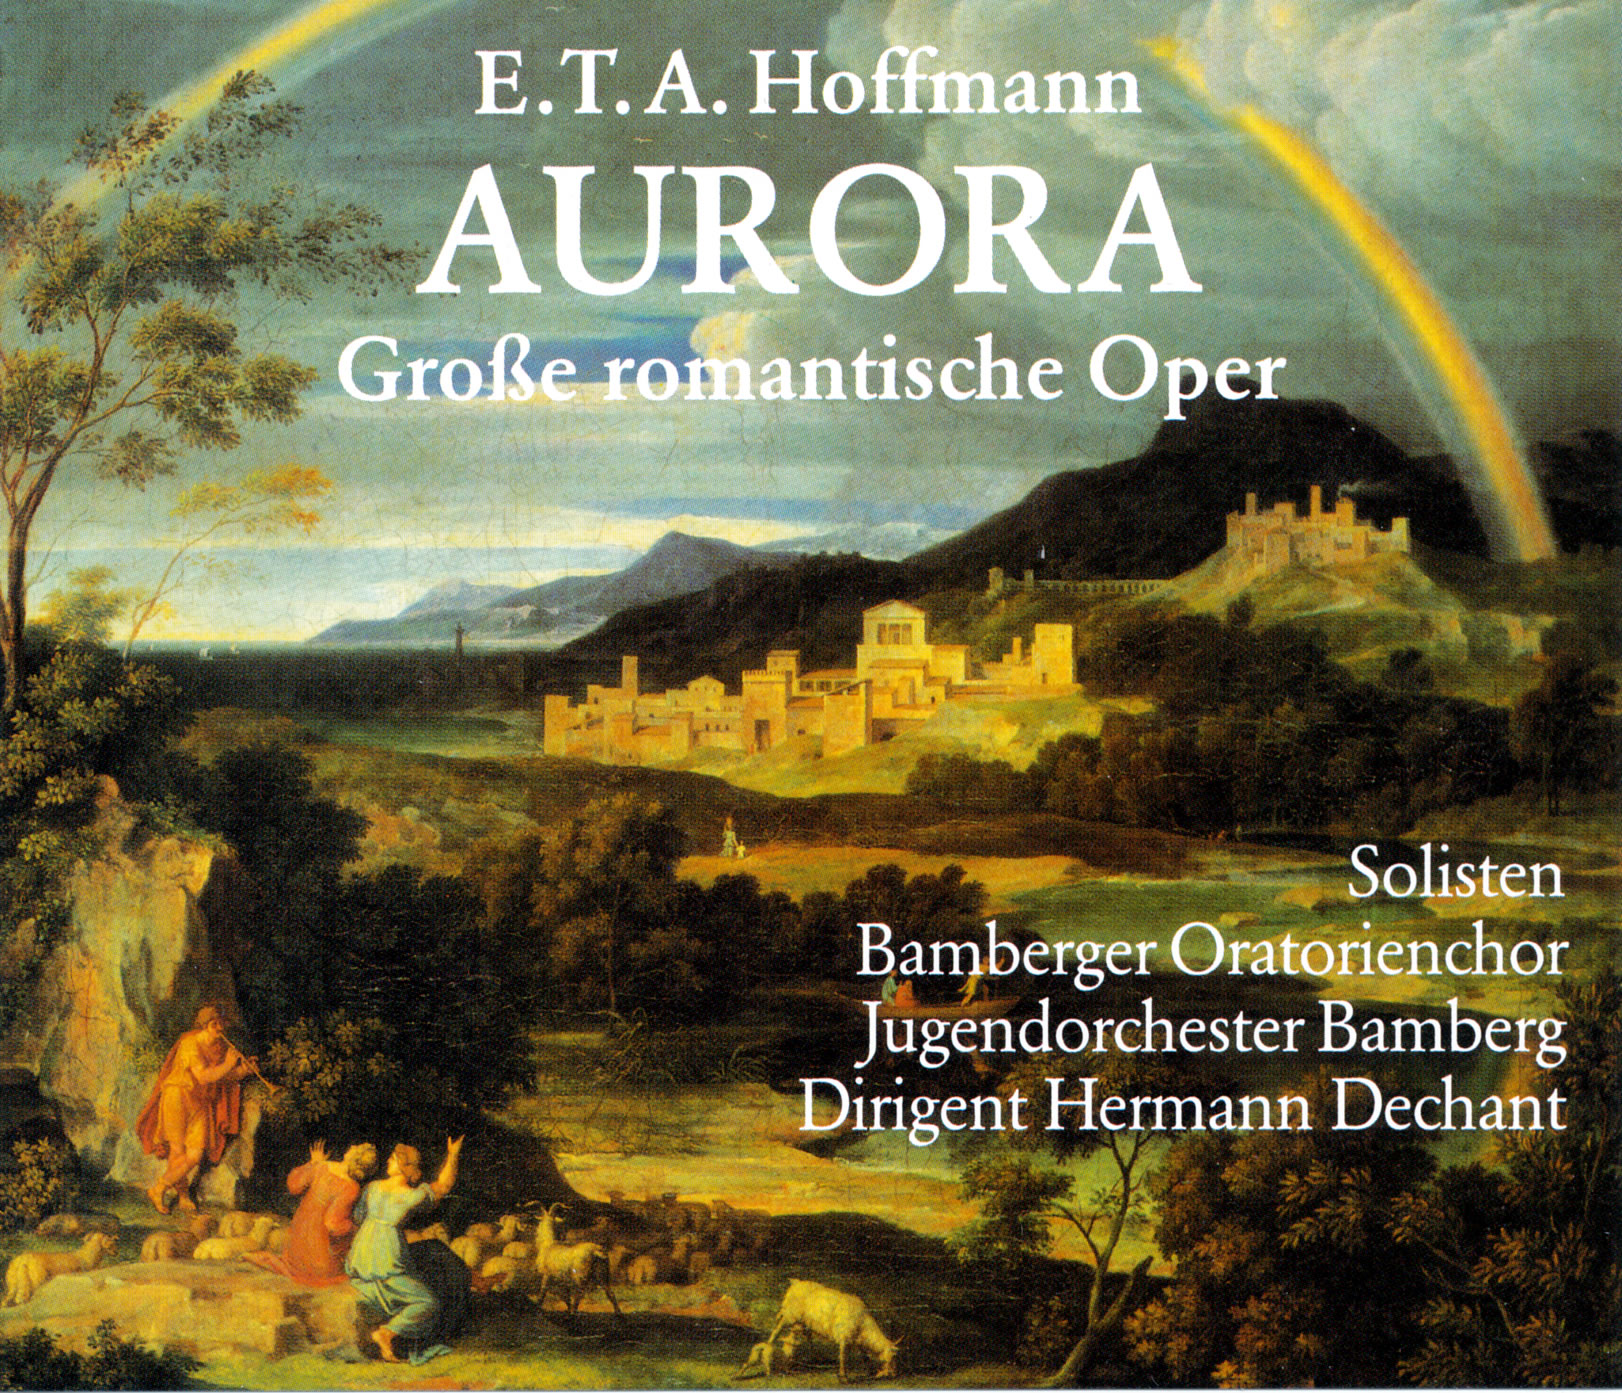 E.T.A. Hoffmann - Aurora